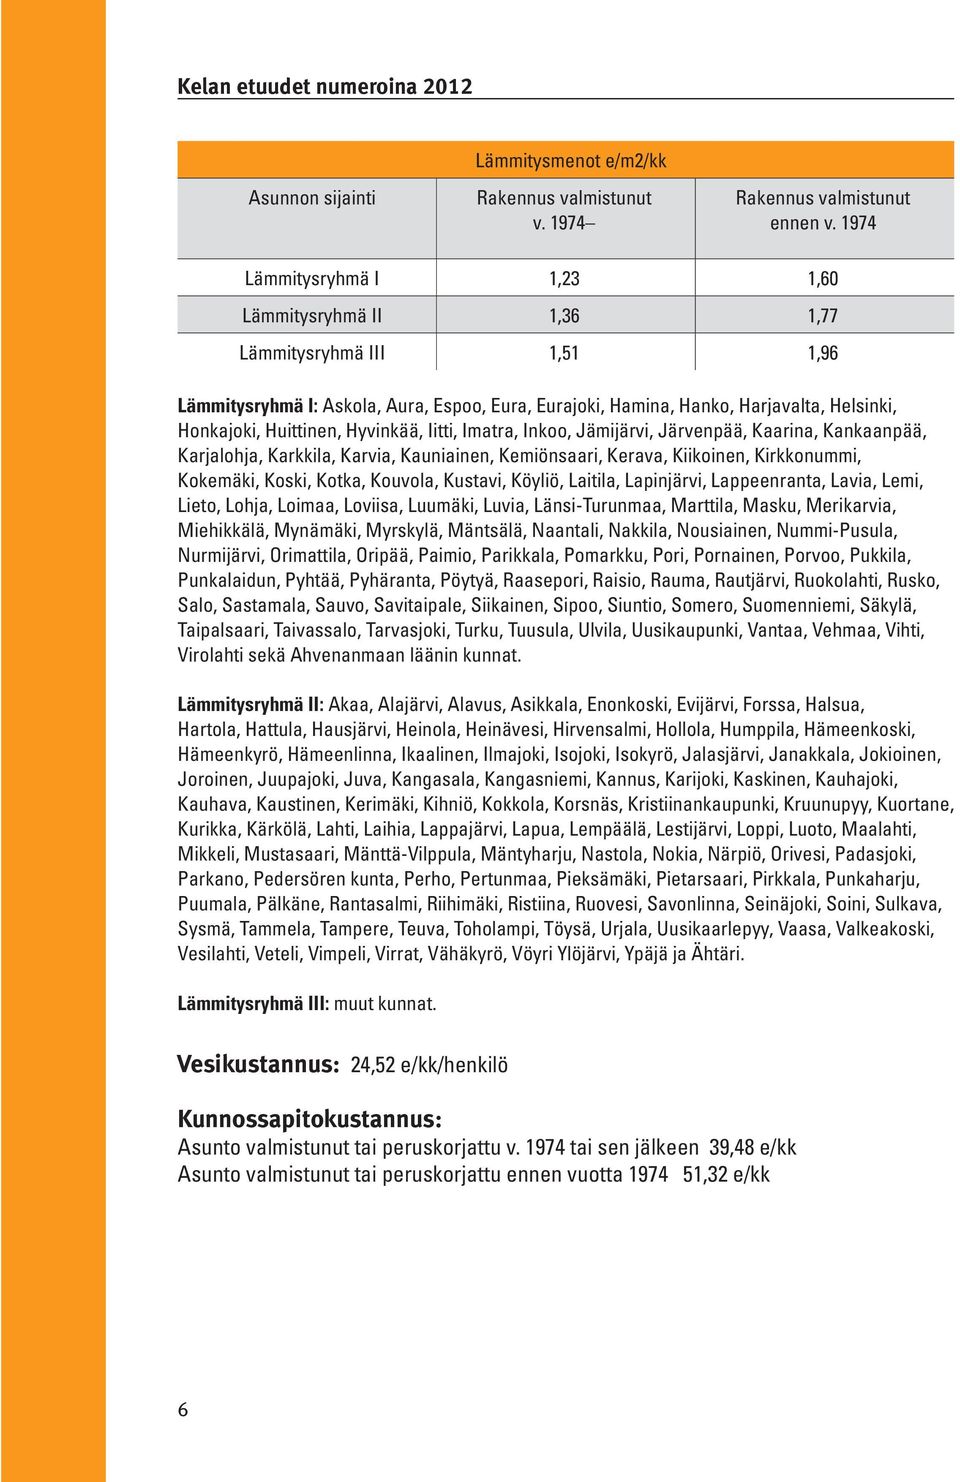 Hyvinkää, Iitti, Imatra, Inkoo, Jämijärvi, Järvenpää, Kaarina, Kankaanpää, Karjalohja, Karkkila, Karvia, Kauniainen, Kemiönsaari, Kerava, Kiikoinen, Kirkkonummi, Kokemäki, Koski, Kotka, Kouvola,